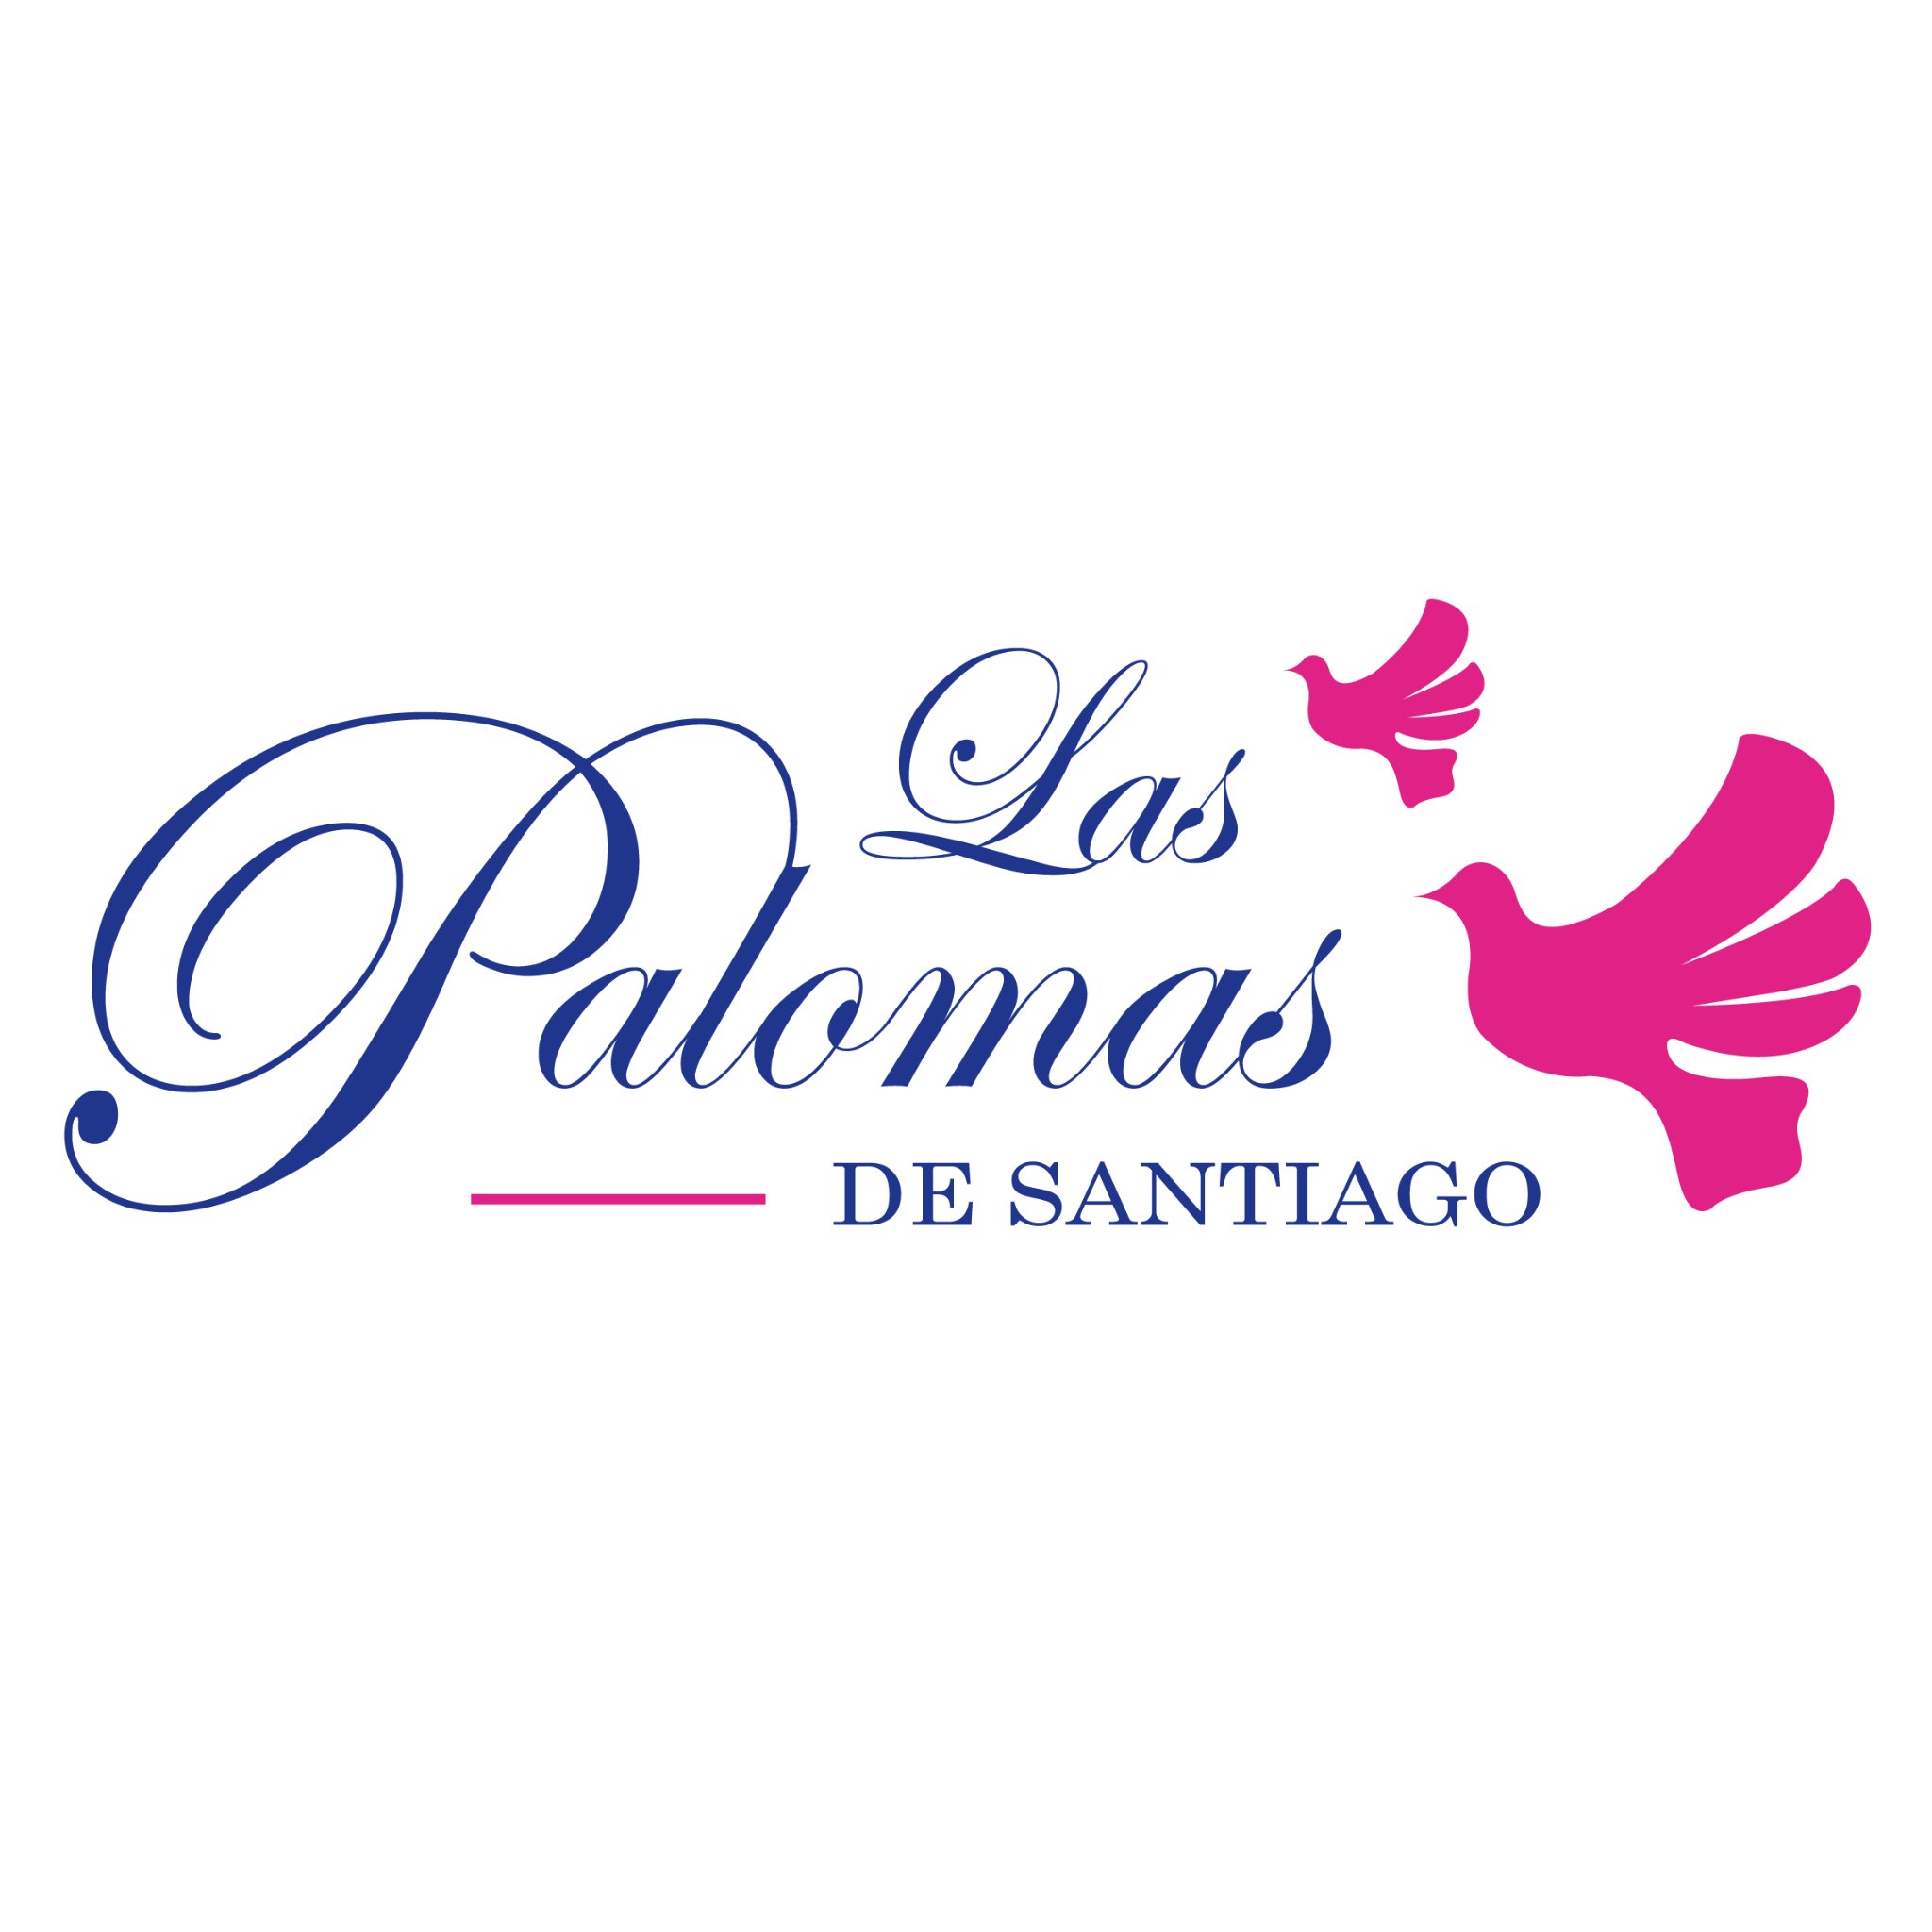 Las Palomas es un Hotel, Restaurant, Spa y Centro de Negocios ubicado en el corazón de Santiago, pueblo mágico de Nuevo León. 

¡Déjate Encantar!